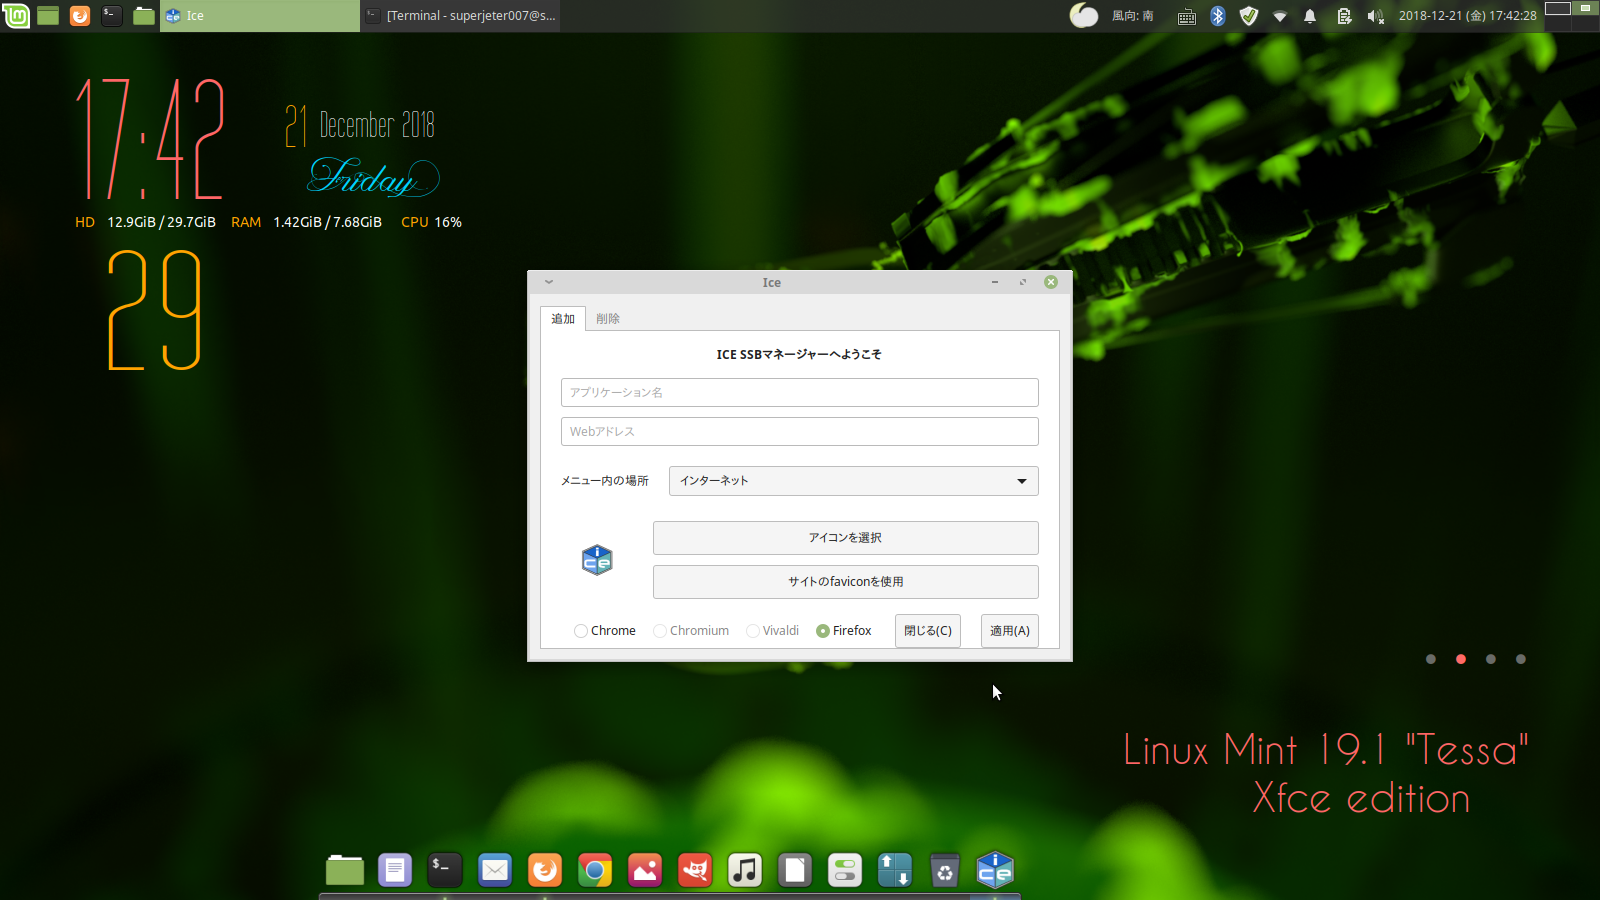 Linux Mint 19 1 Tessa Xfce Edition徹底カスタマイズ Linux Mint 19 1 Tessa の中では筆者おすすめno1のxfce Editionの機能性をmanjaro 18 Xfce Editionに近づける 日本語office Online定義